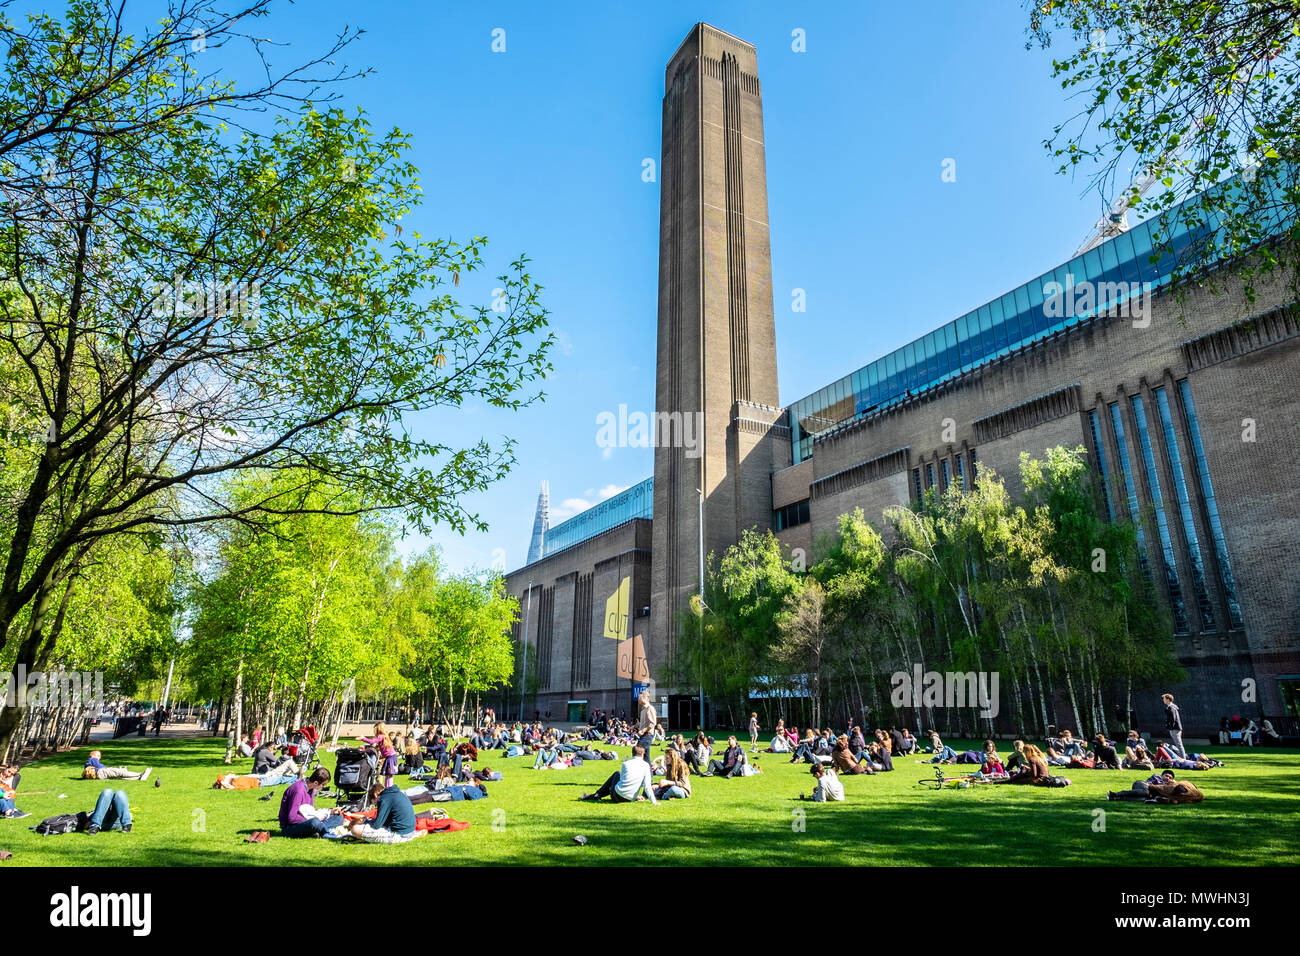 Vista di persone sull'erba al di fuori della Tate Modern Museum sulla Southbank, London, England, Regno Unito Foto Stock